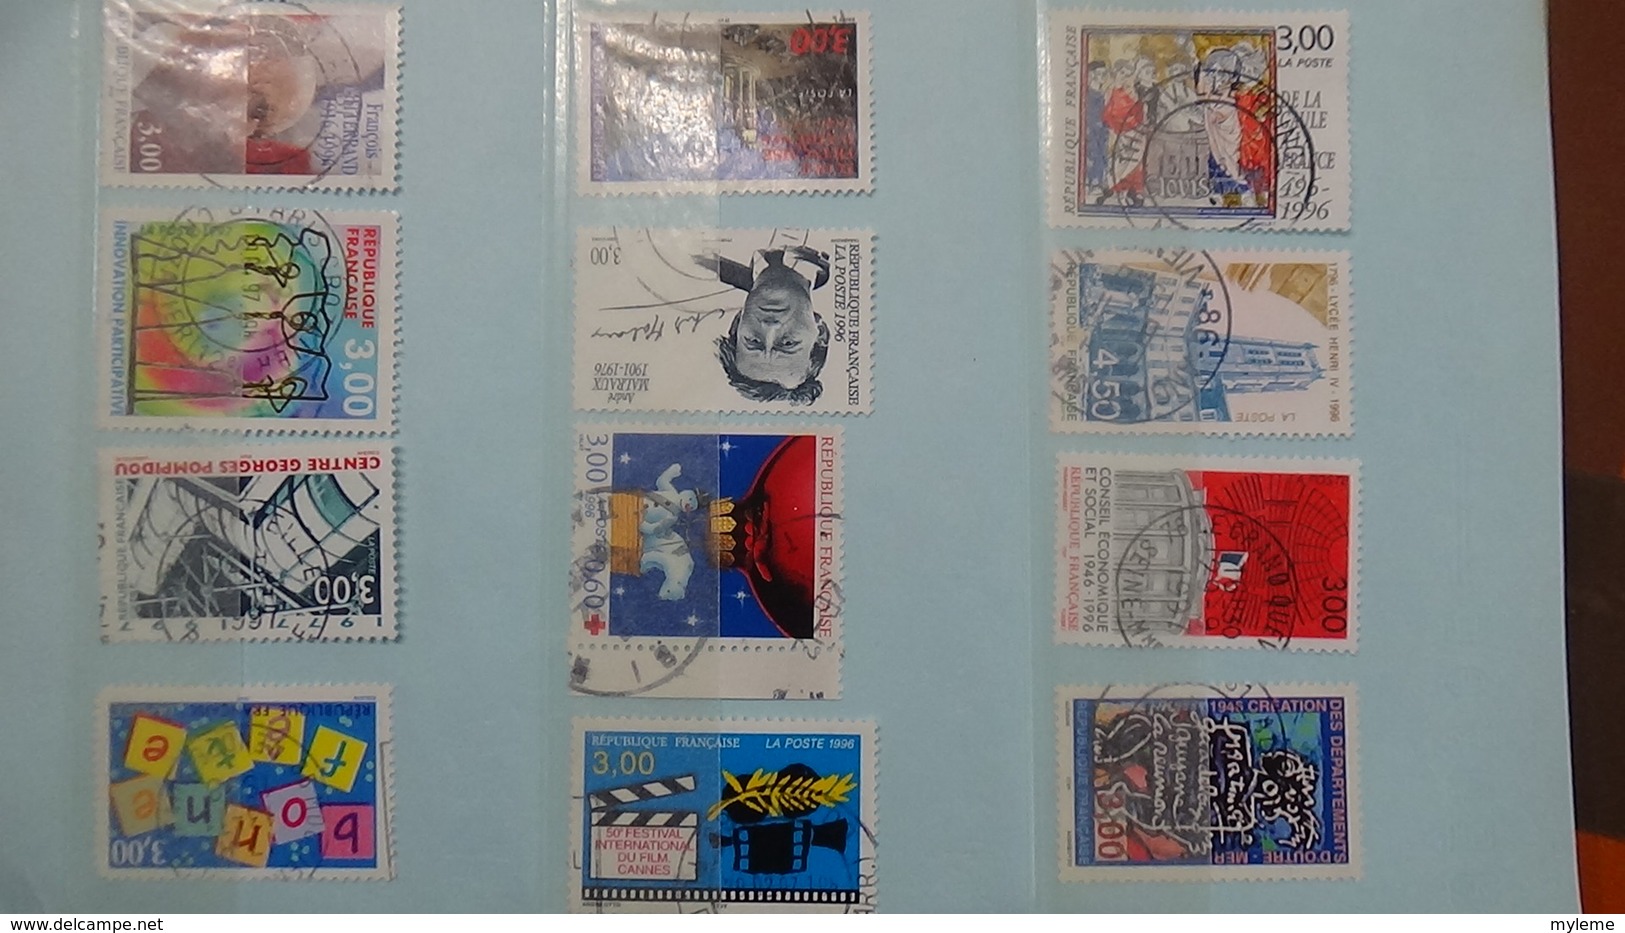 B370 Bon lot de timbres de France avec oblitérations rondes. Très sympa !!!